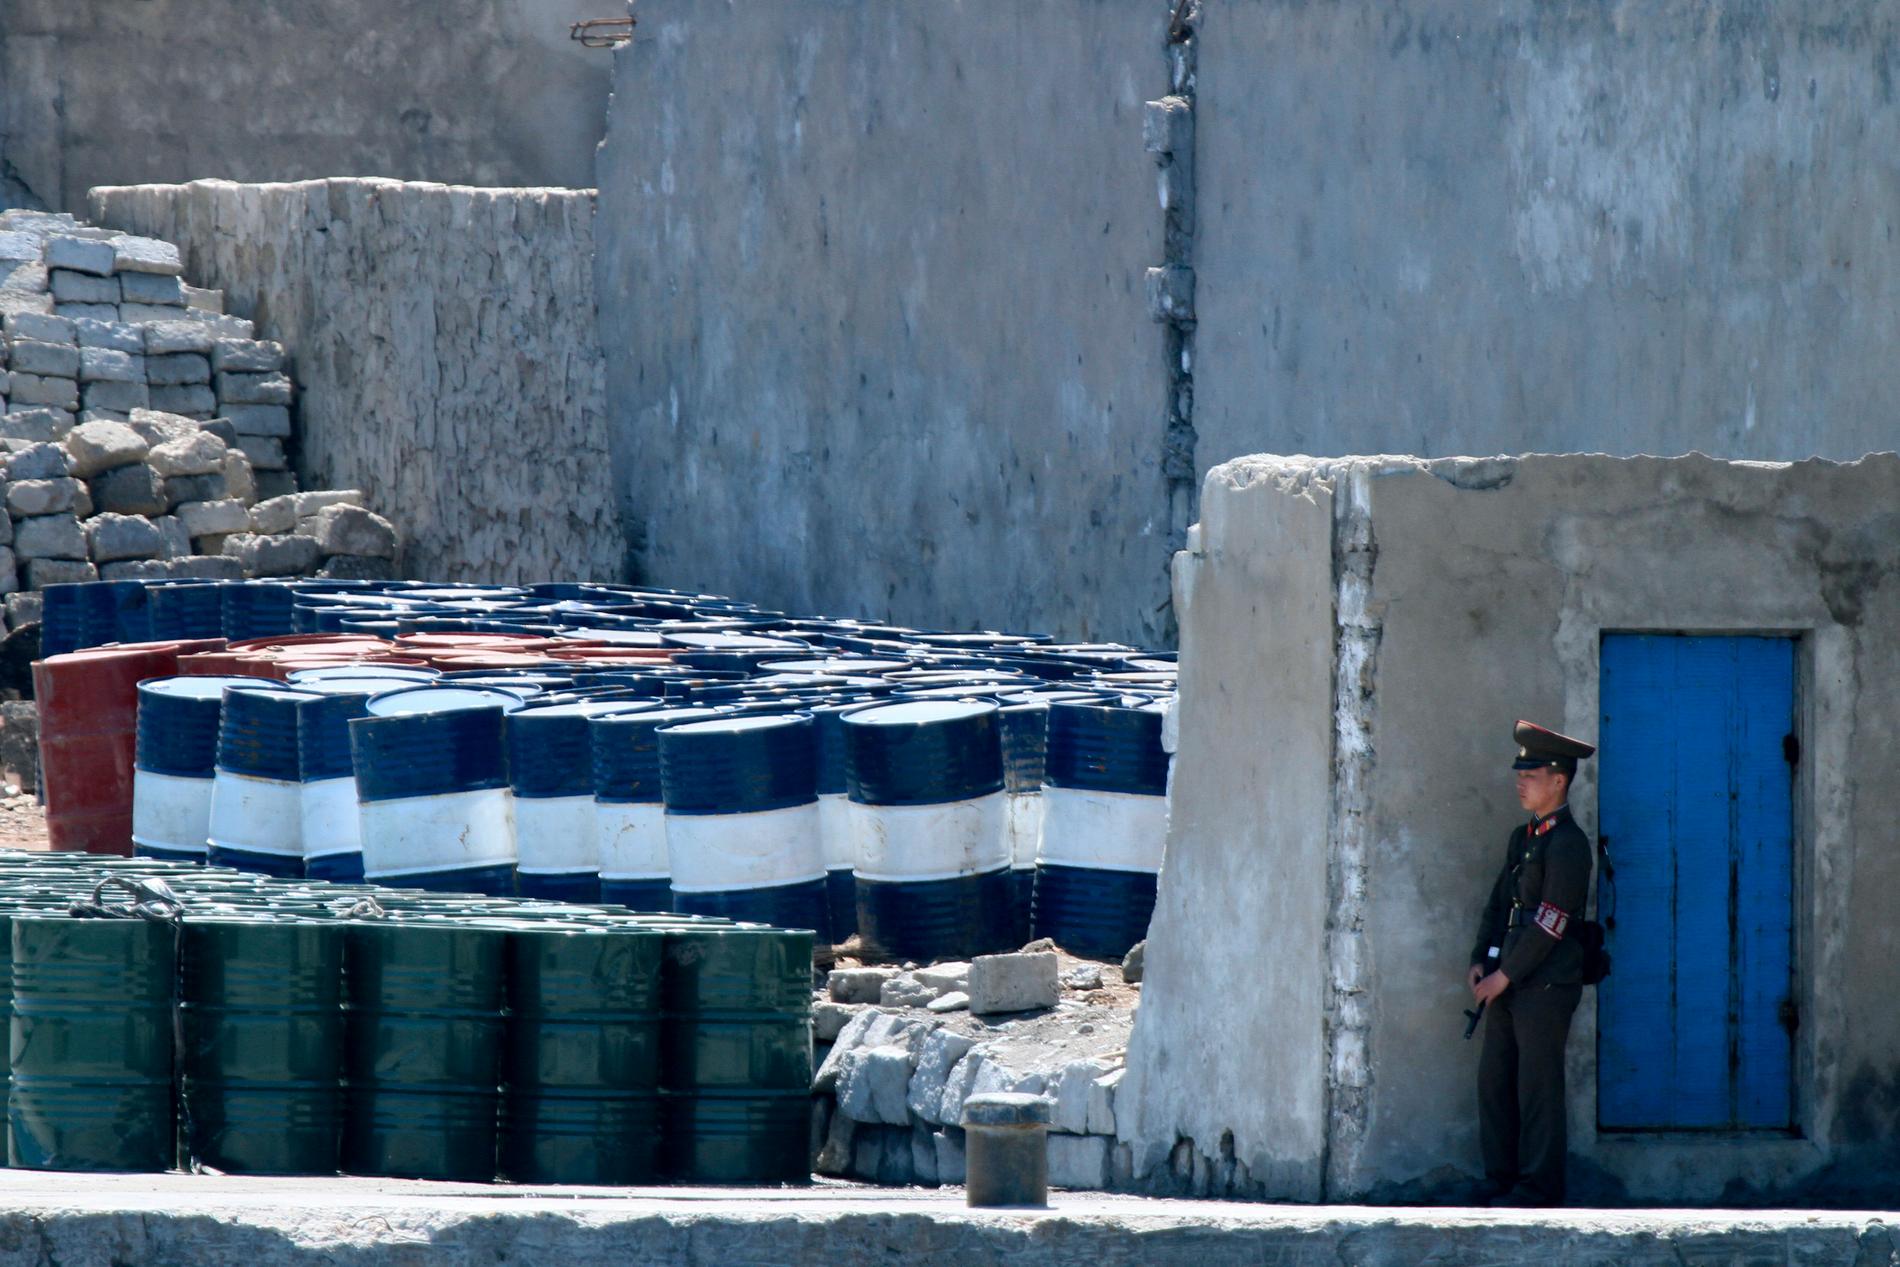 En nordkoreansk soldat vaktar oljetunnor i staden Sinuiju nära gränsen mot Kina. Arkivbild.